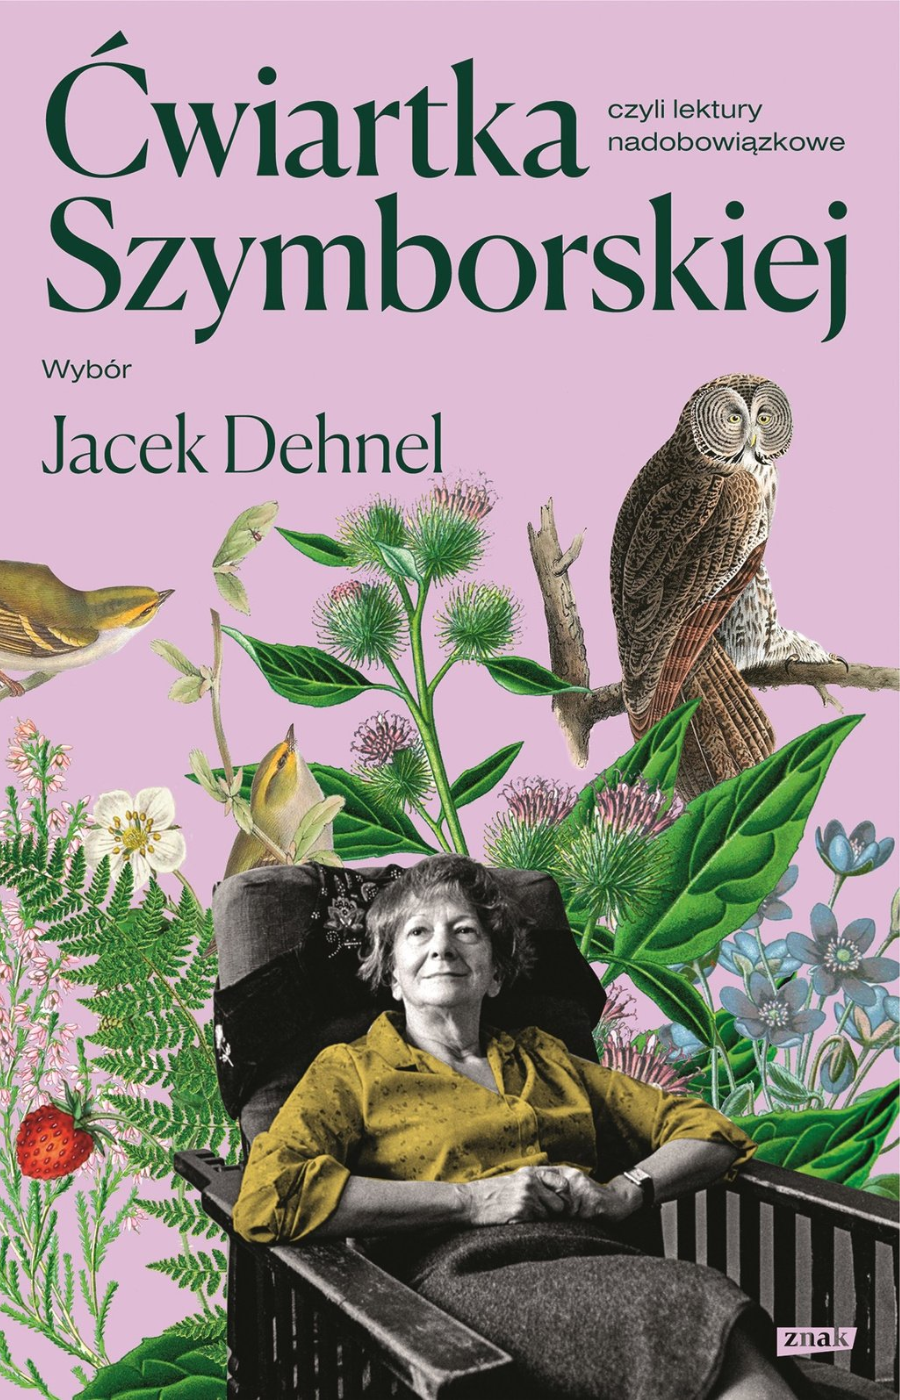 Polecamy książkę: „Ćwiartka Szymborskiej, czyli lektury nadobowiązkowe”, wybór: Jacek Dehnel, wyd. Znak